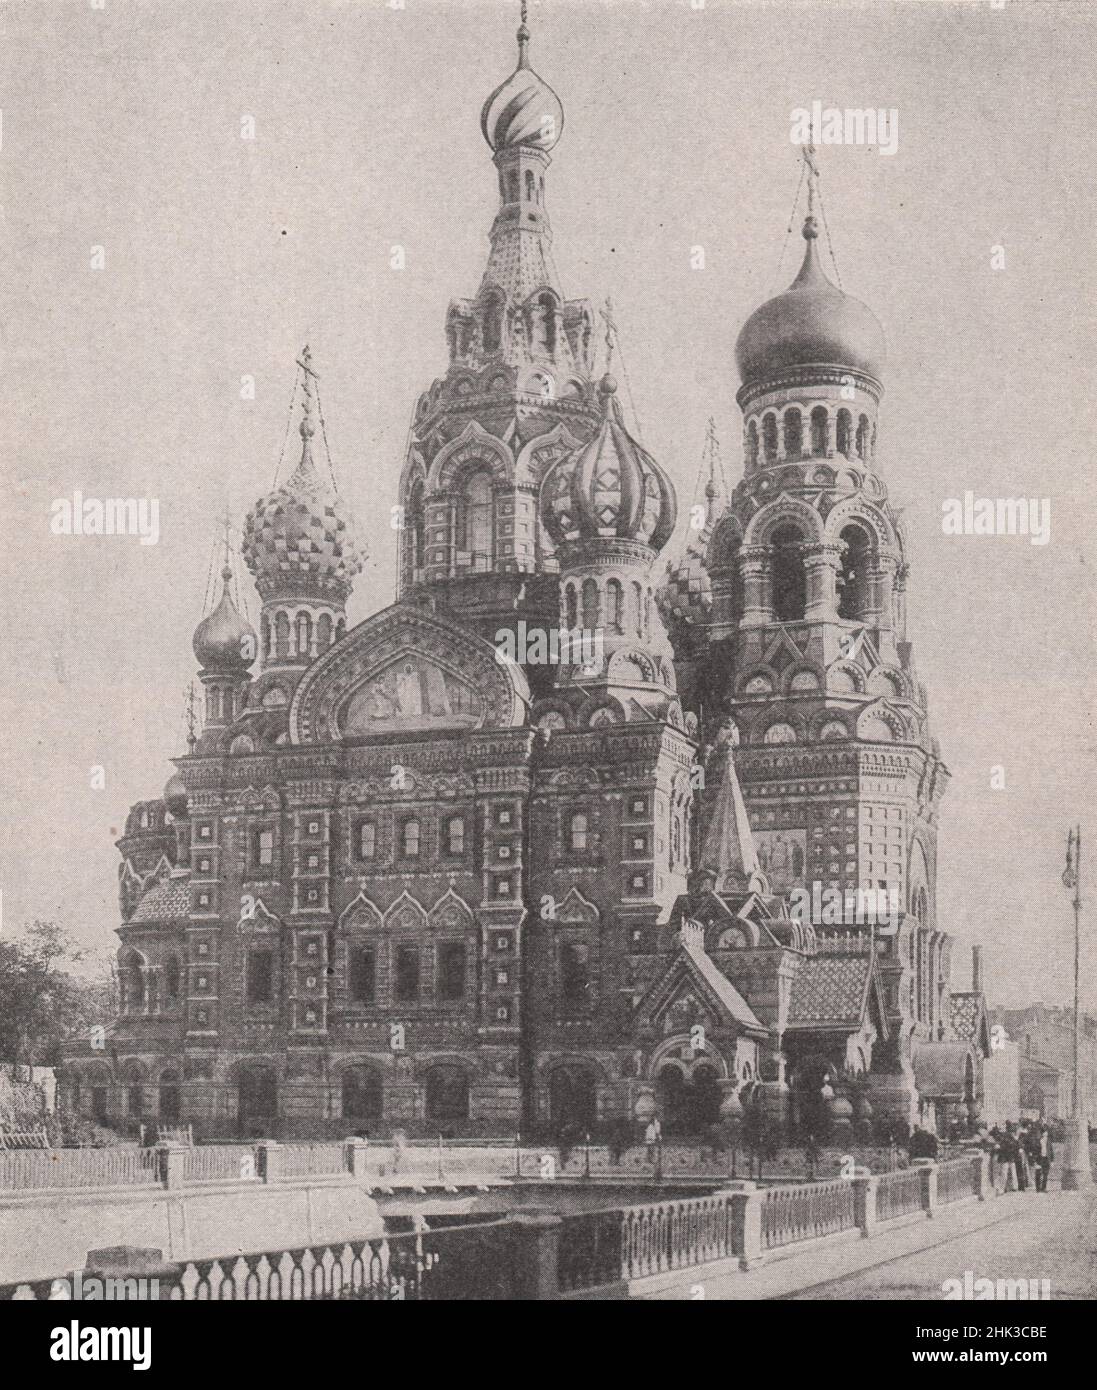 L'église byzantine de la Résurrection de Petrograd. Russie. Petrograd (Saint-Pétersbourg) (1923) Banque D'Images